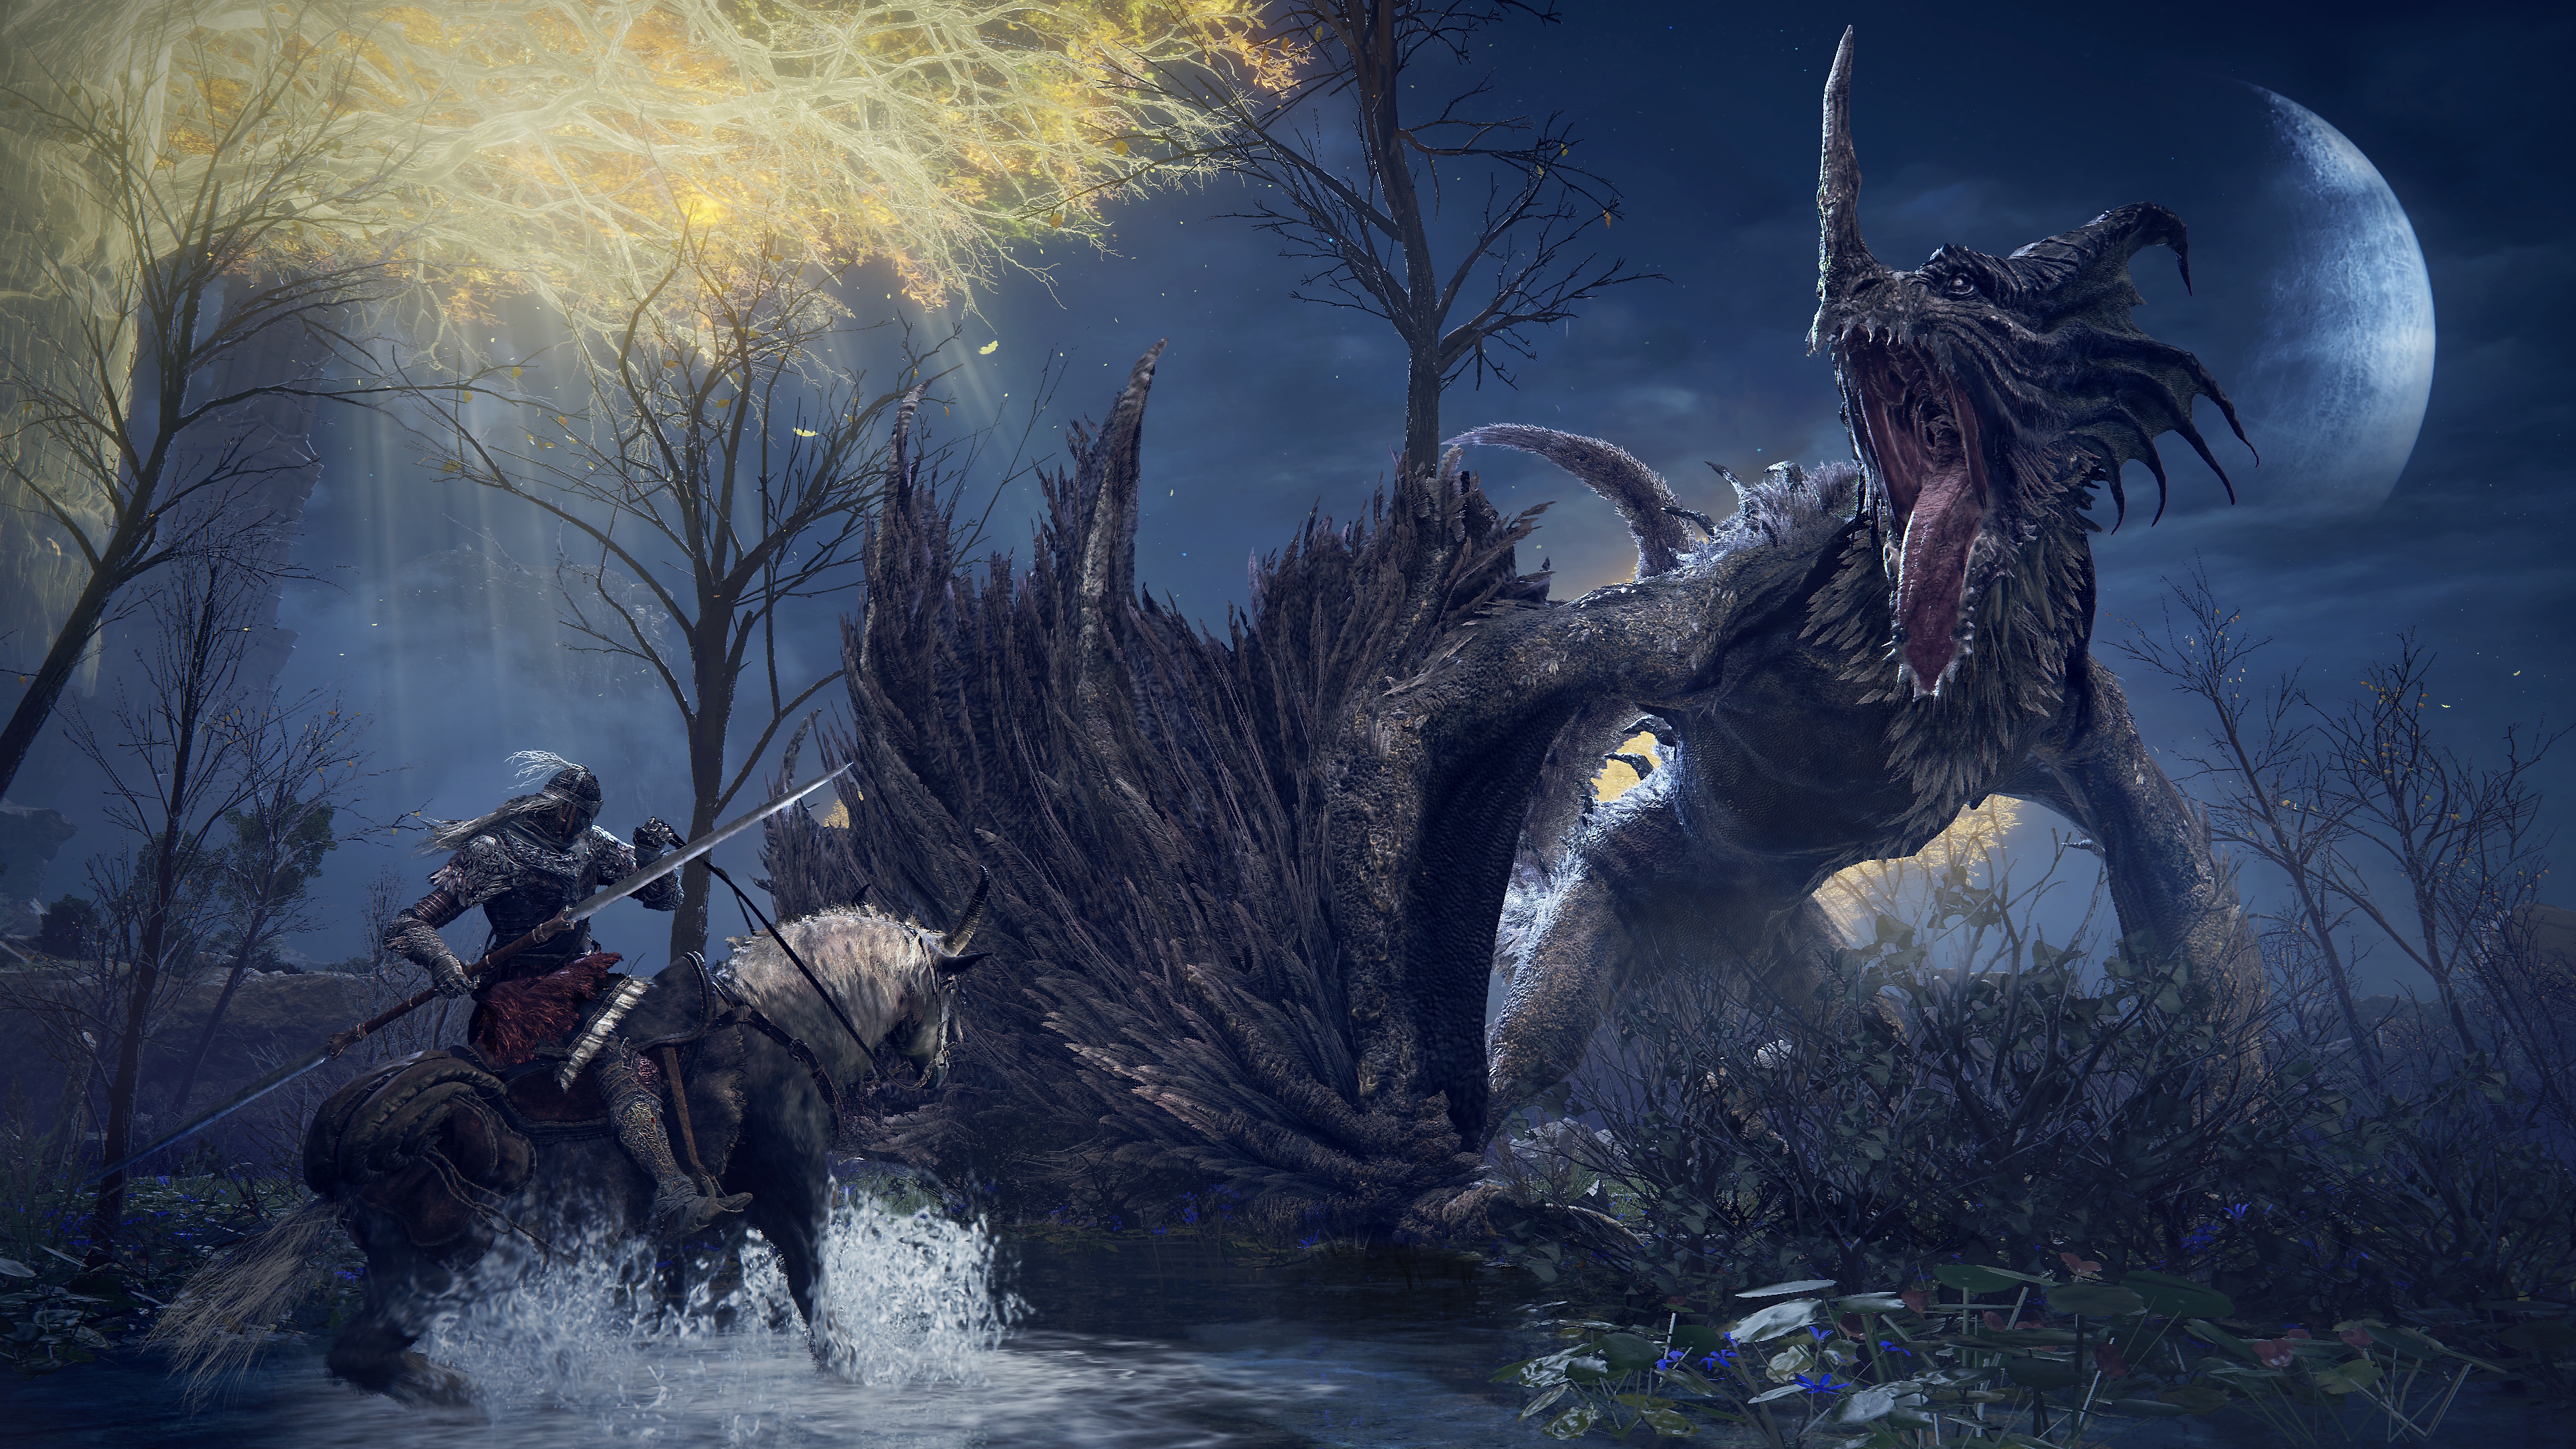 Capture d'écran d'Elden Ring montrant un gigantesque dragon et un chevalier sur son destrier